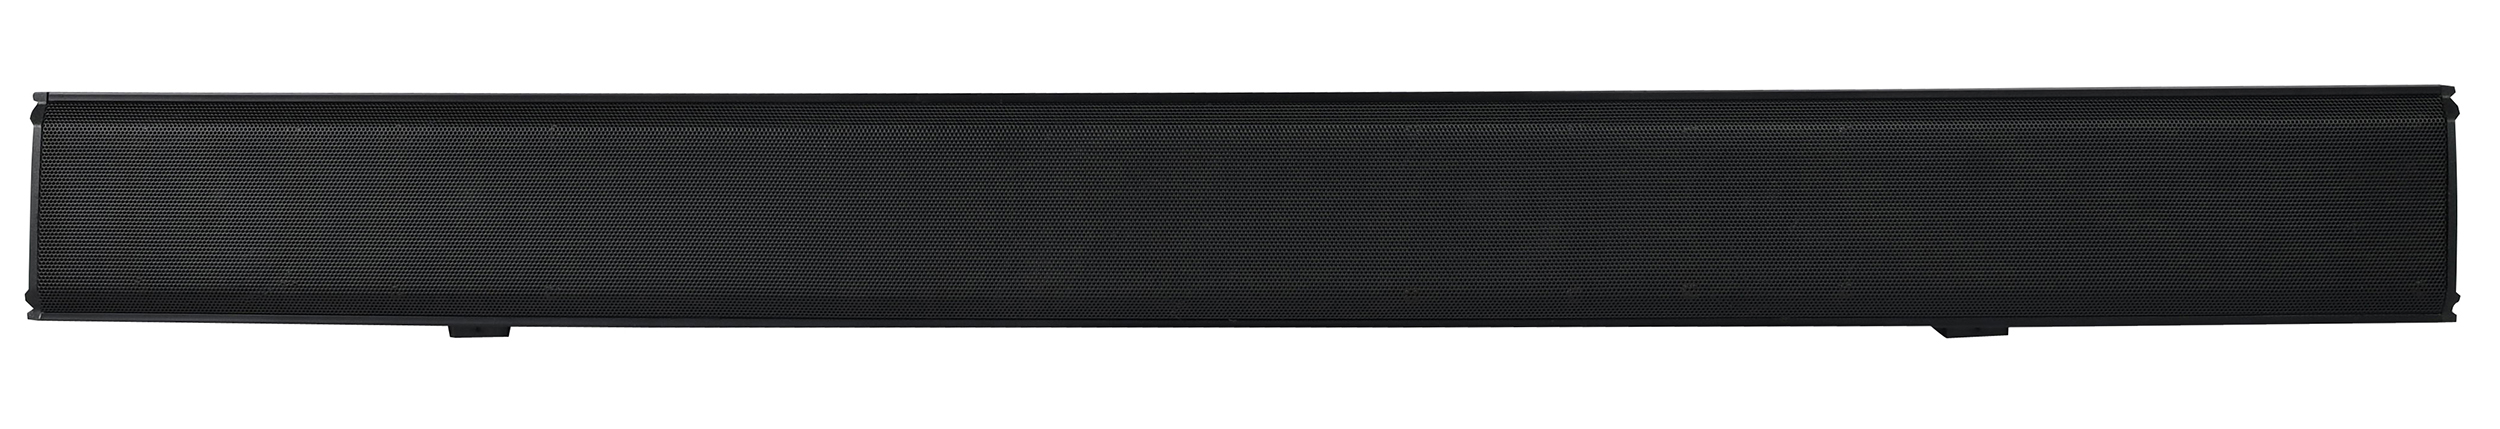 SBO680, 2.1 soundbar, 80cm 80w + Built-in Subwoofer, black